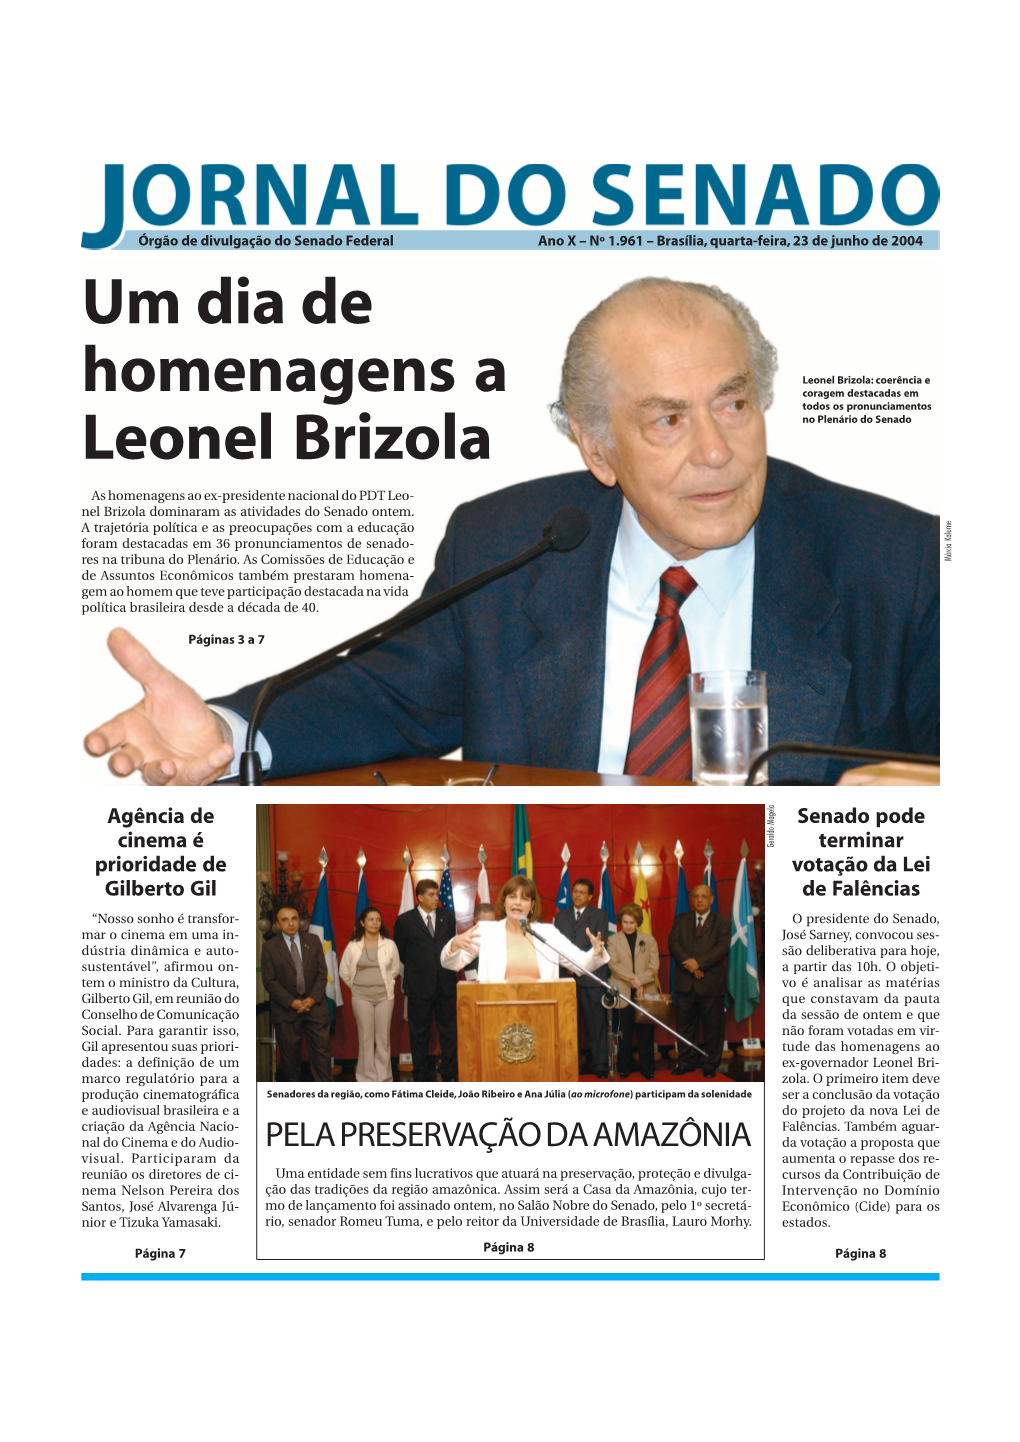 Um Dia De Homenagens a Leonel Brizola